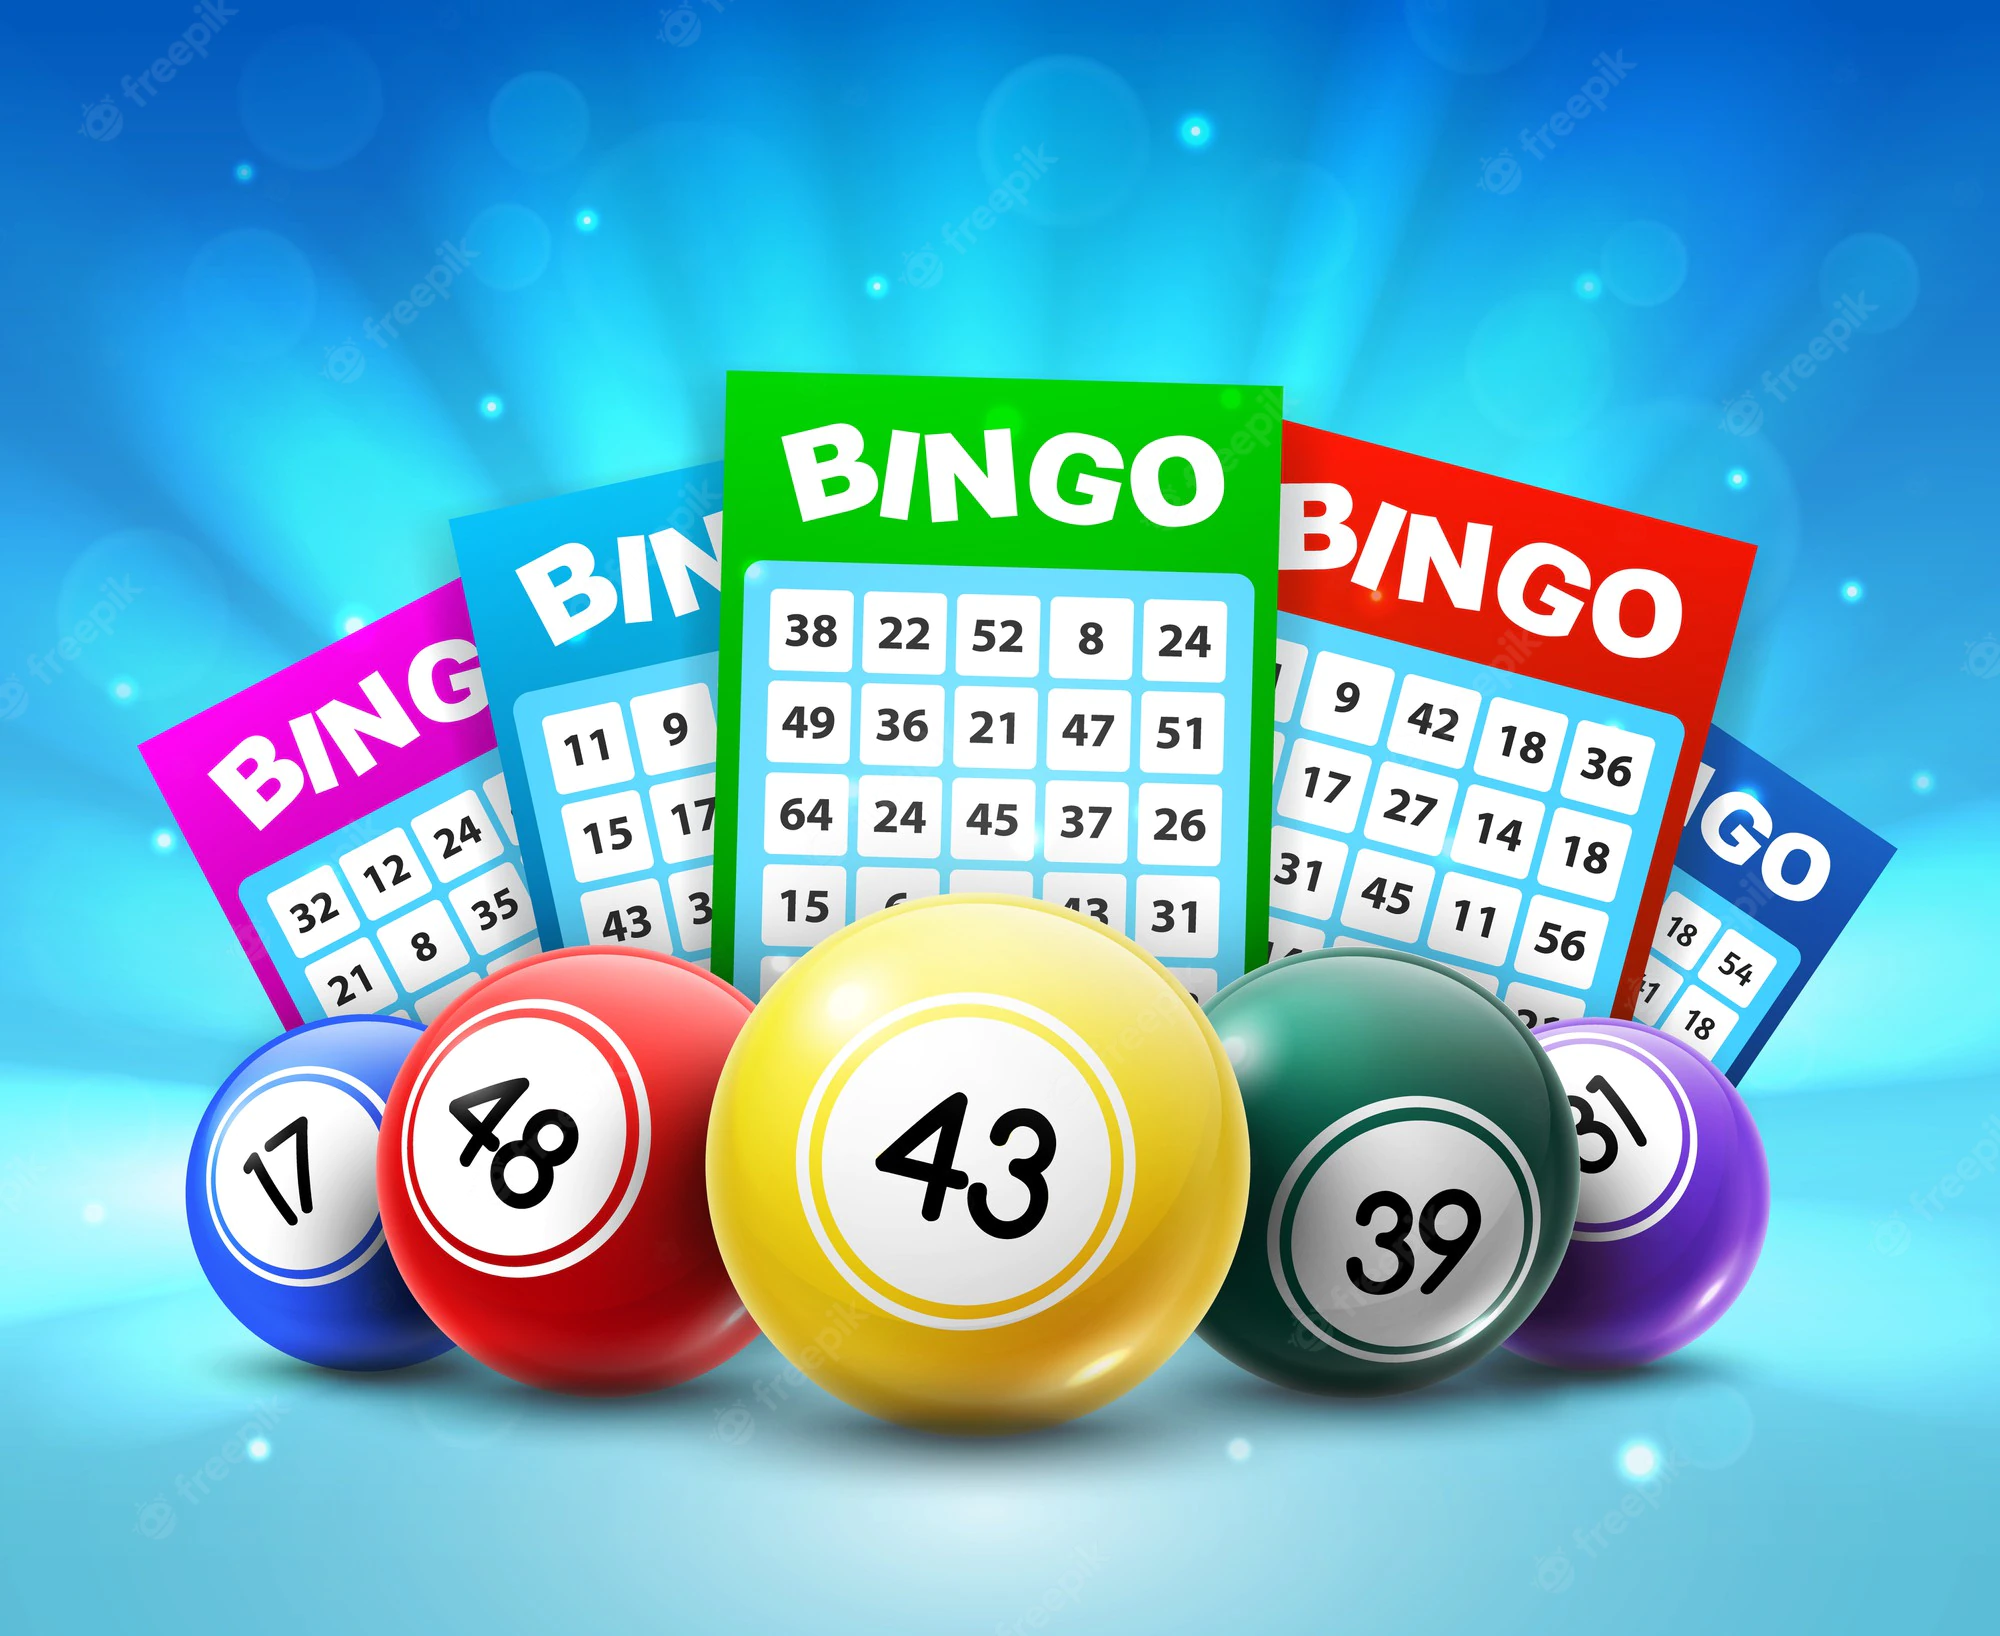 How to Get Bingo Blitz Freebies - The Gambling Guy